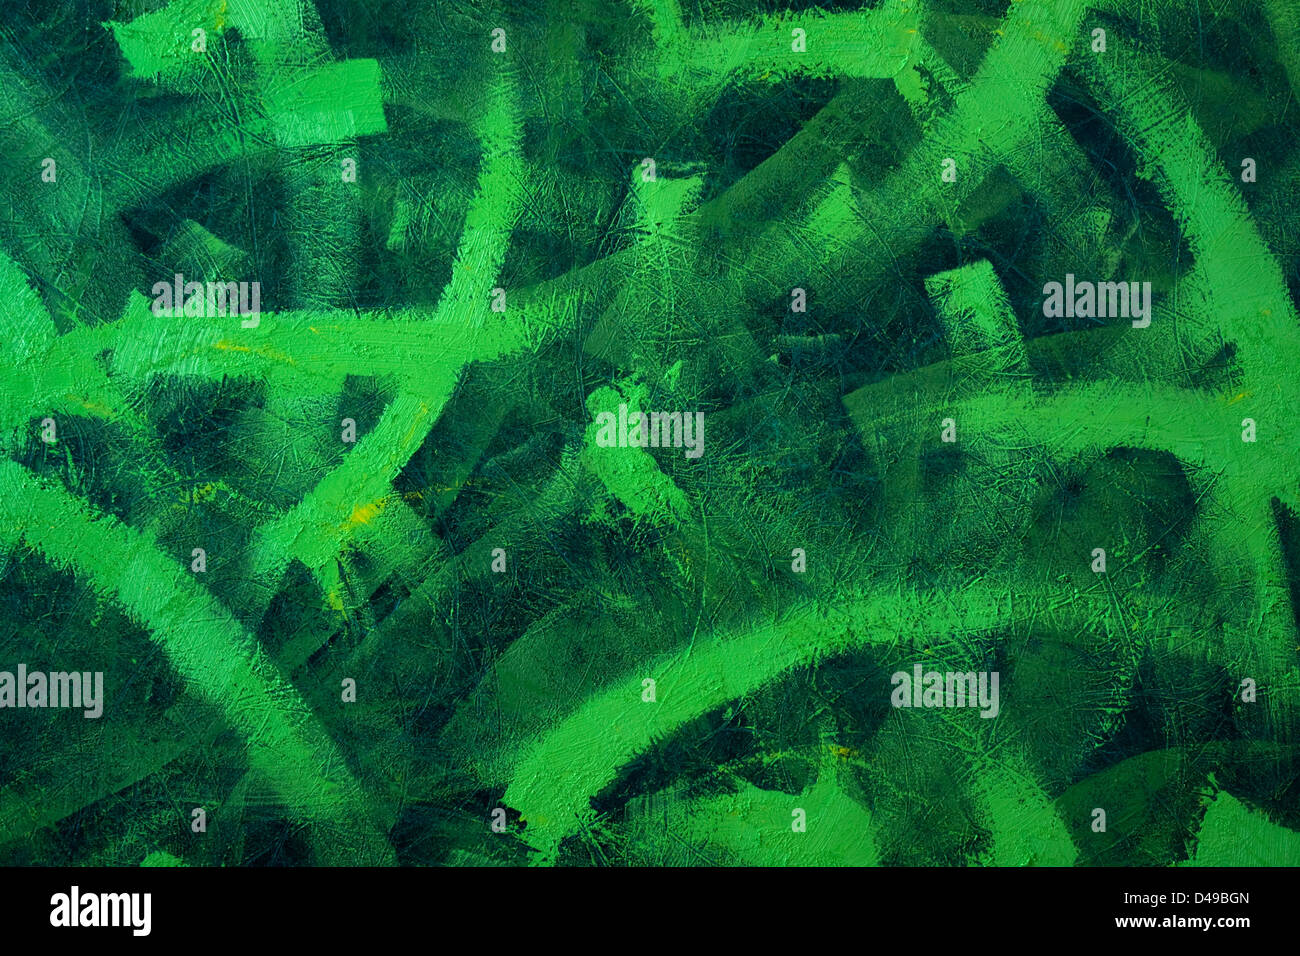 abstrakt Grün bemalten Hintergrund mit Pinselstrichen auf unebenem Gelände Stockfoto